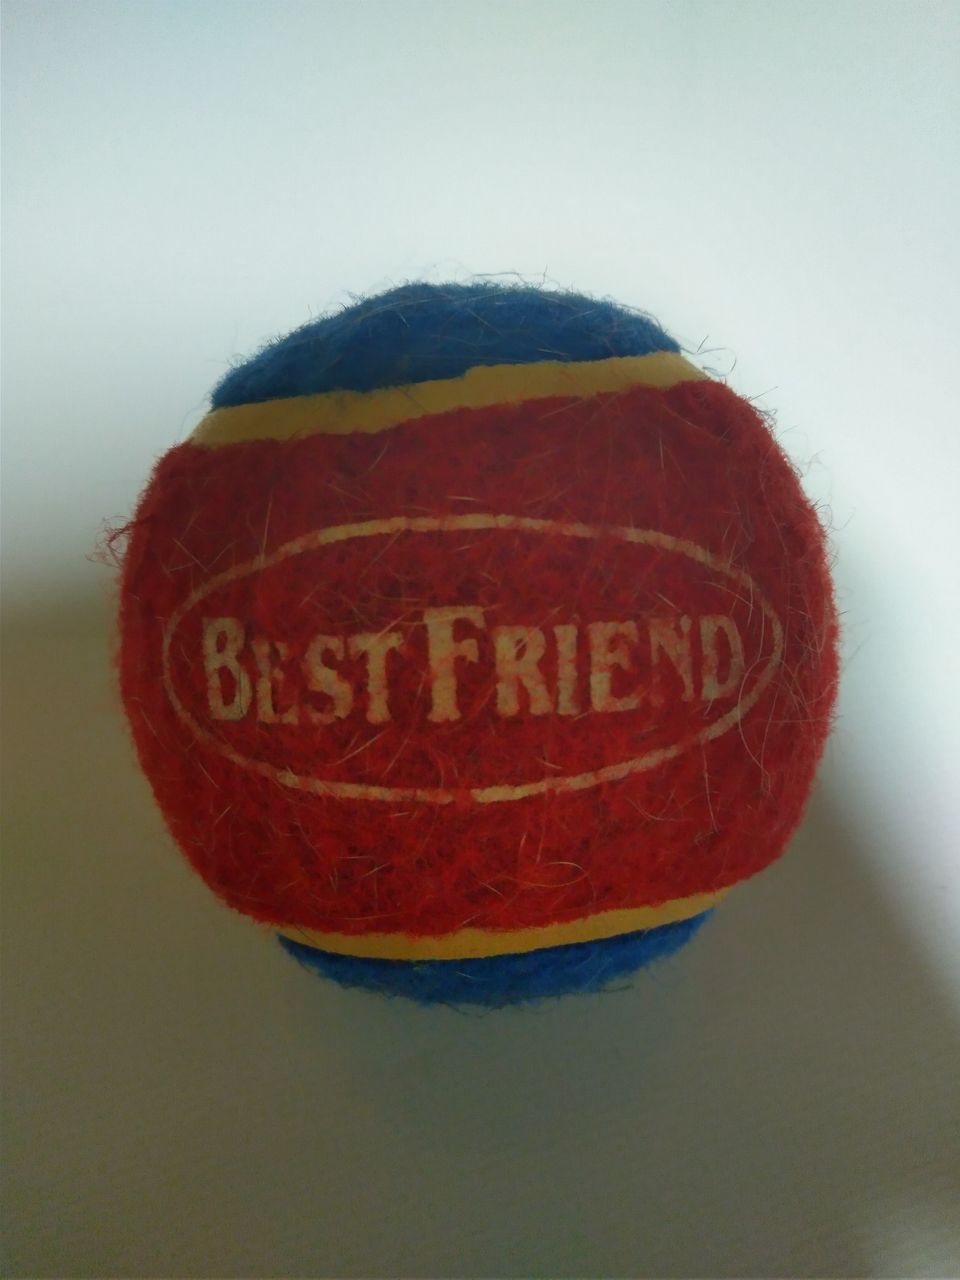 Best Friend Ball koiran tennispallo